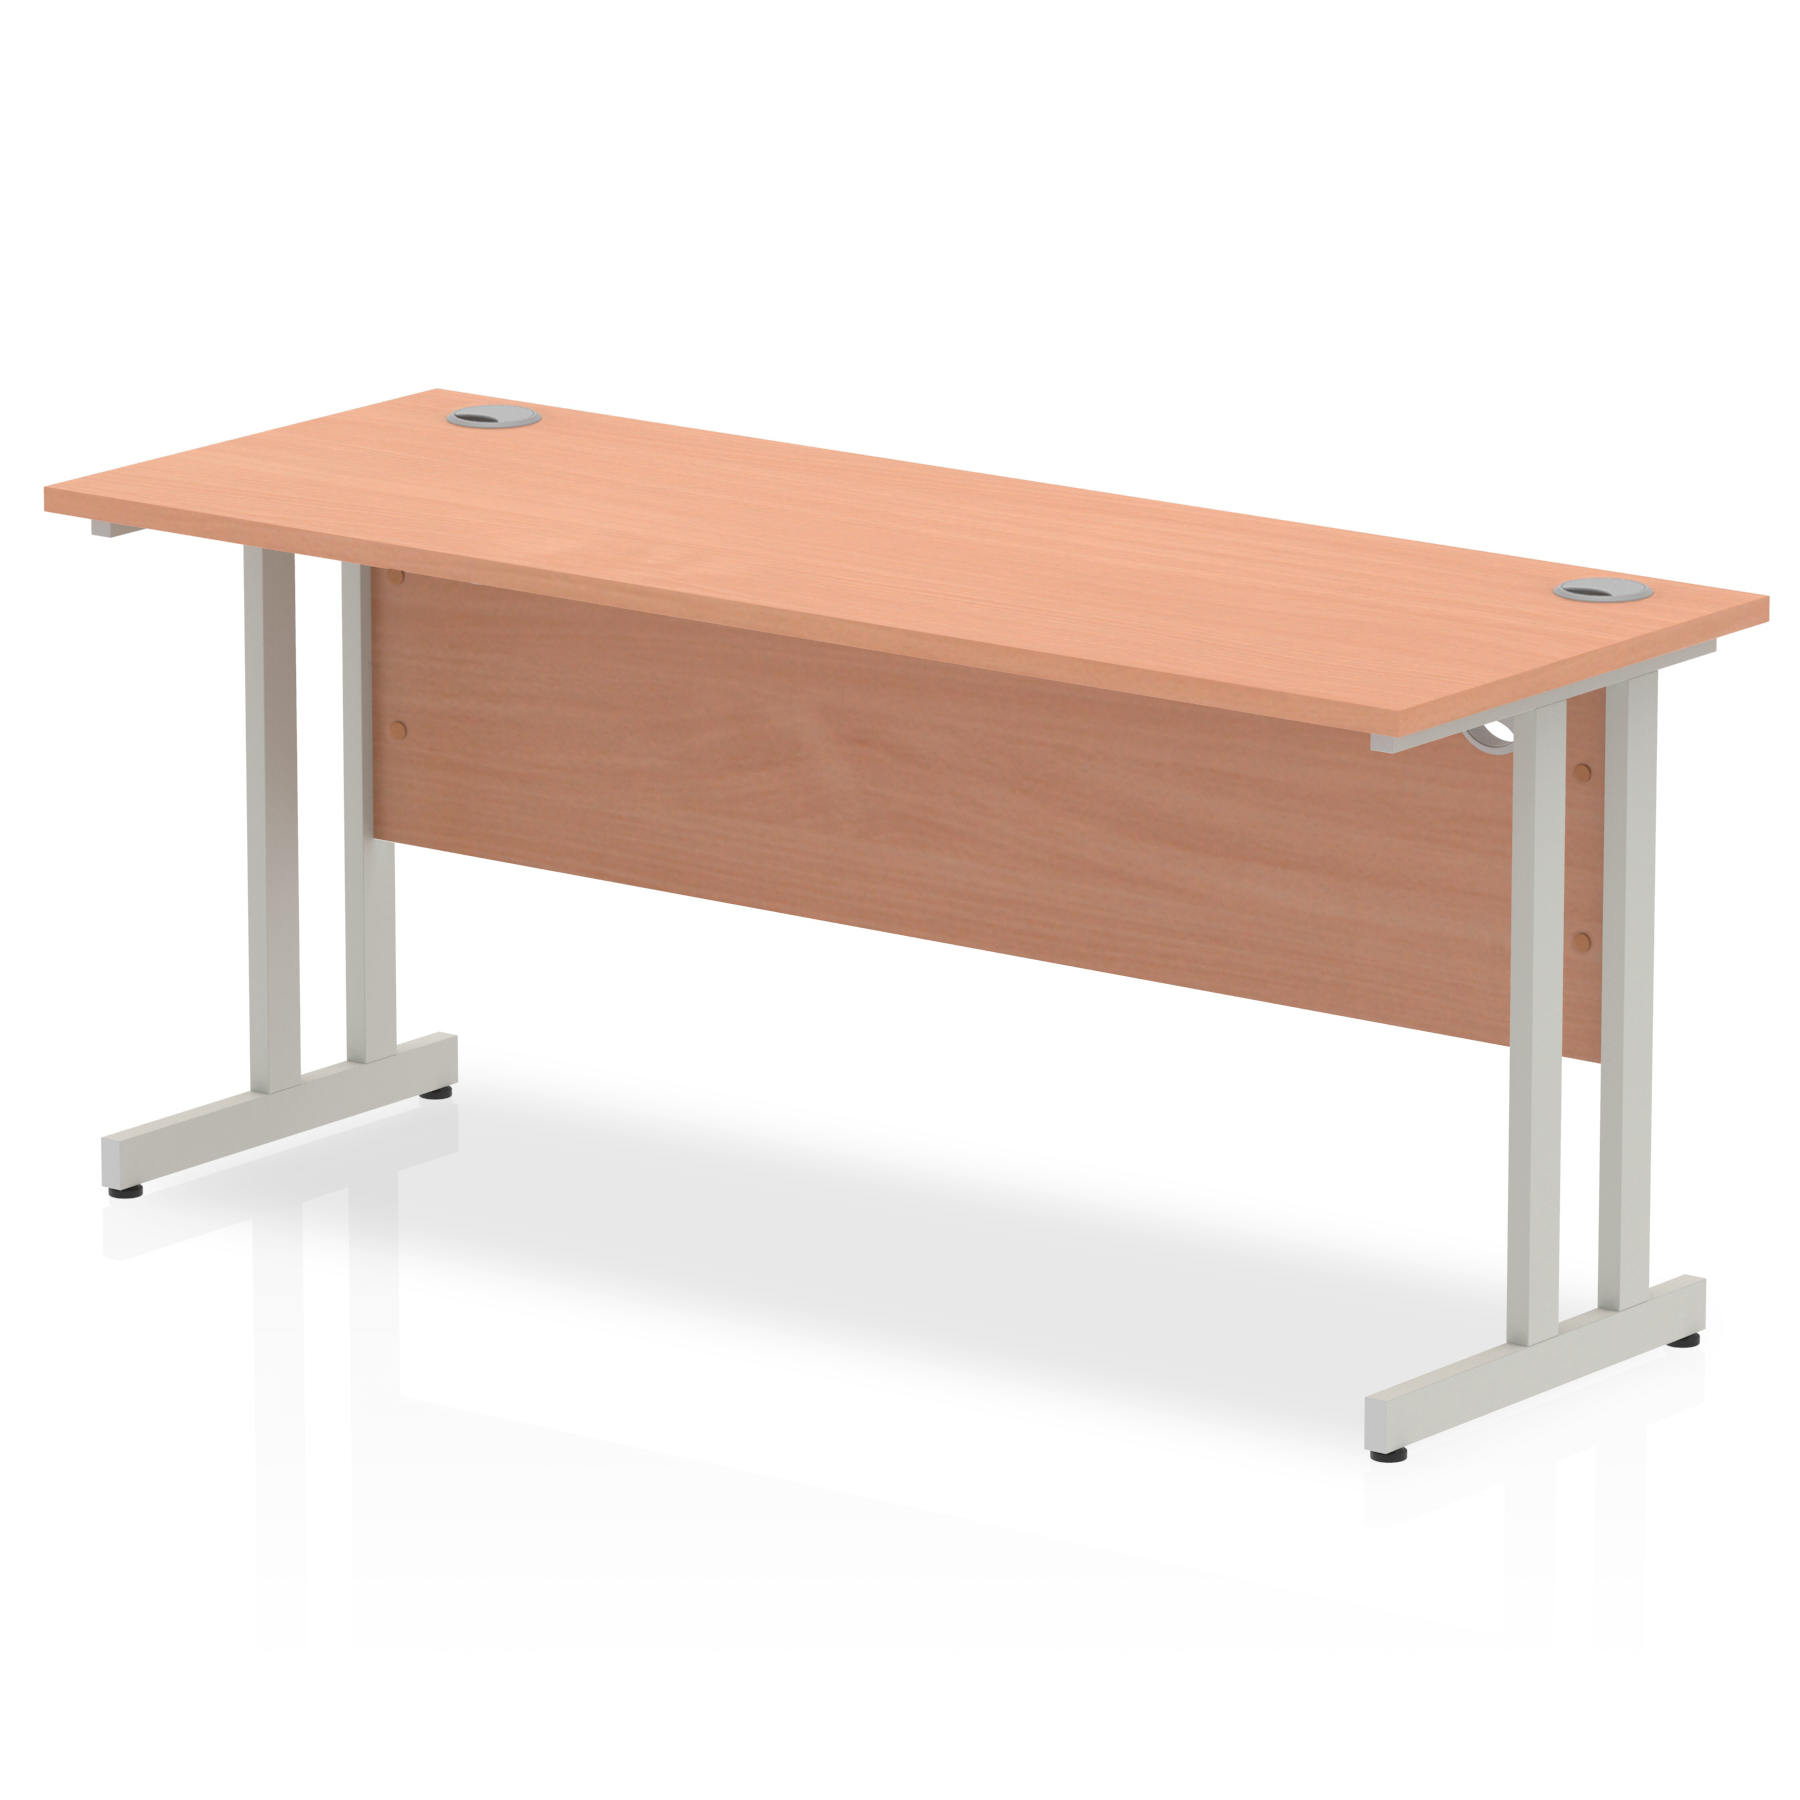 Budget  Desk  1800 x 600 cantilever desk Beech MFC  top silver legs 